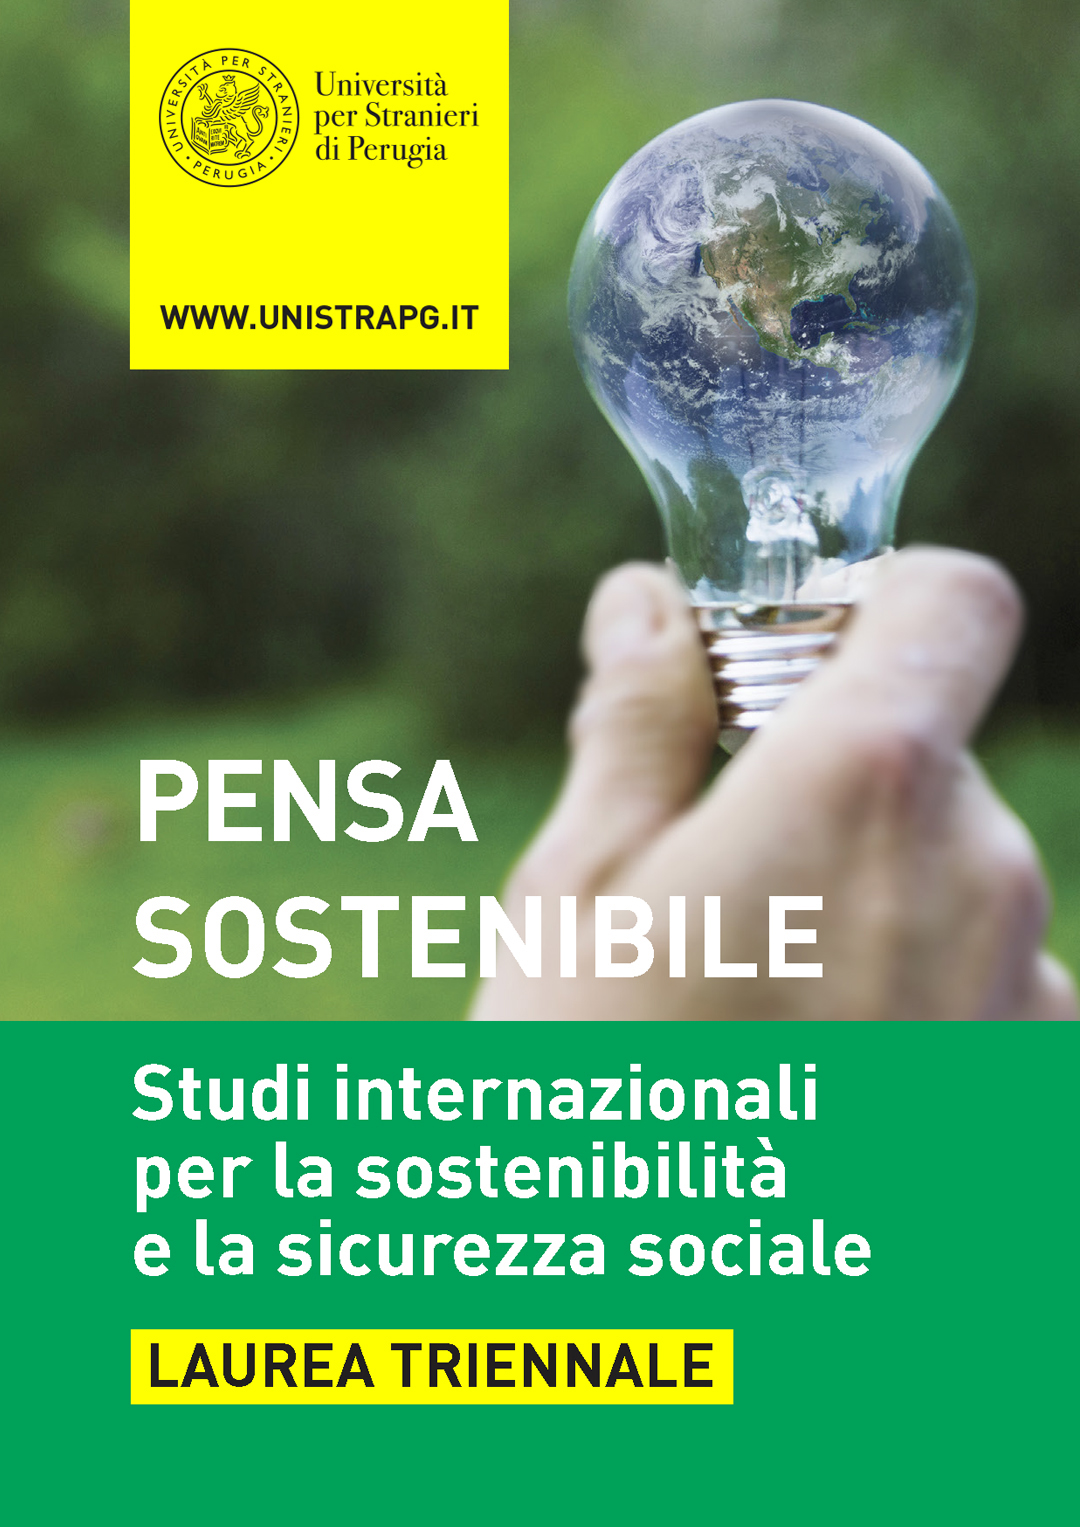 Corso di laurea in Studi internazionali per a sostenibilità e la sicurezza sociale